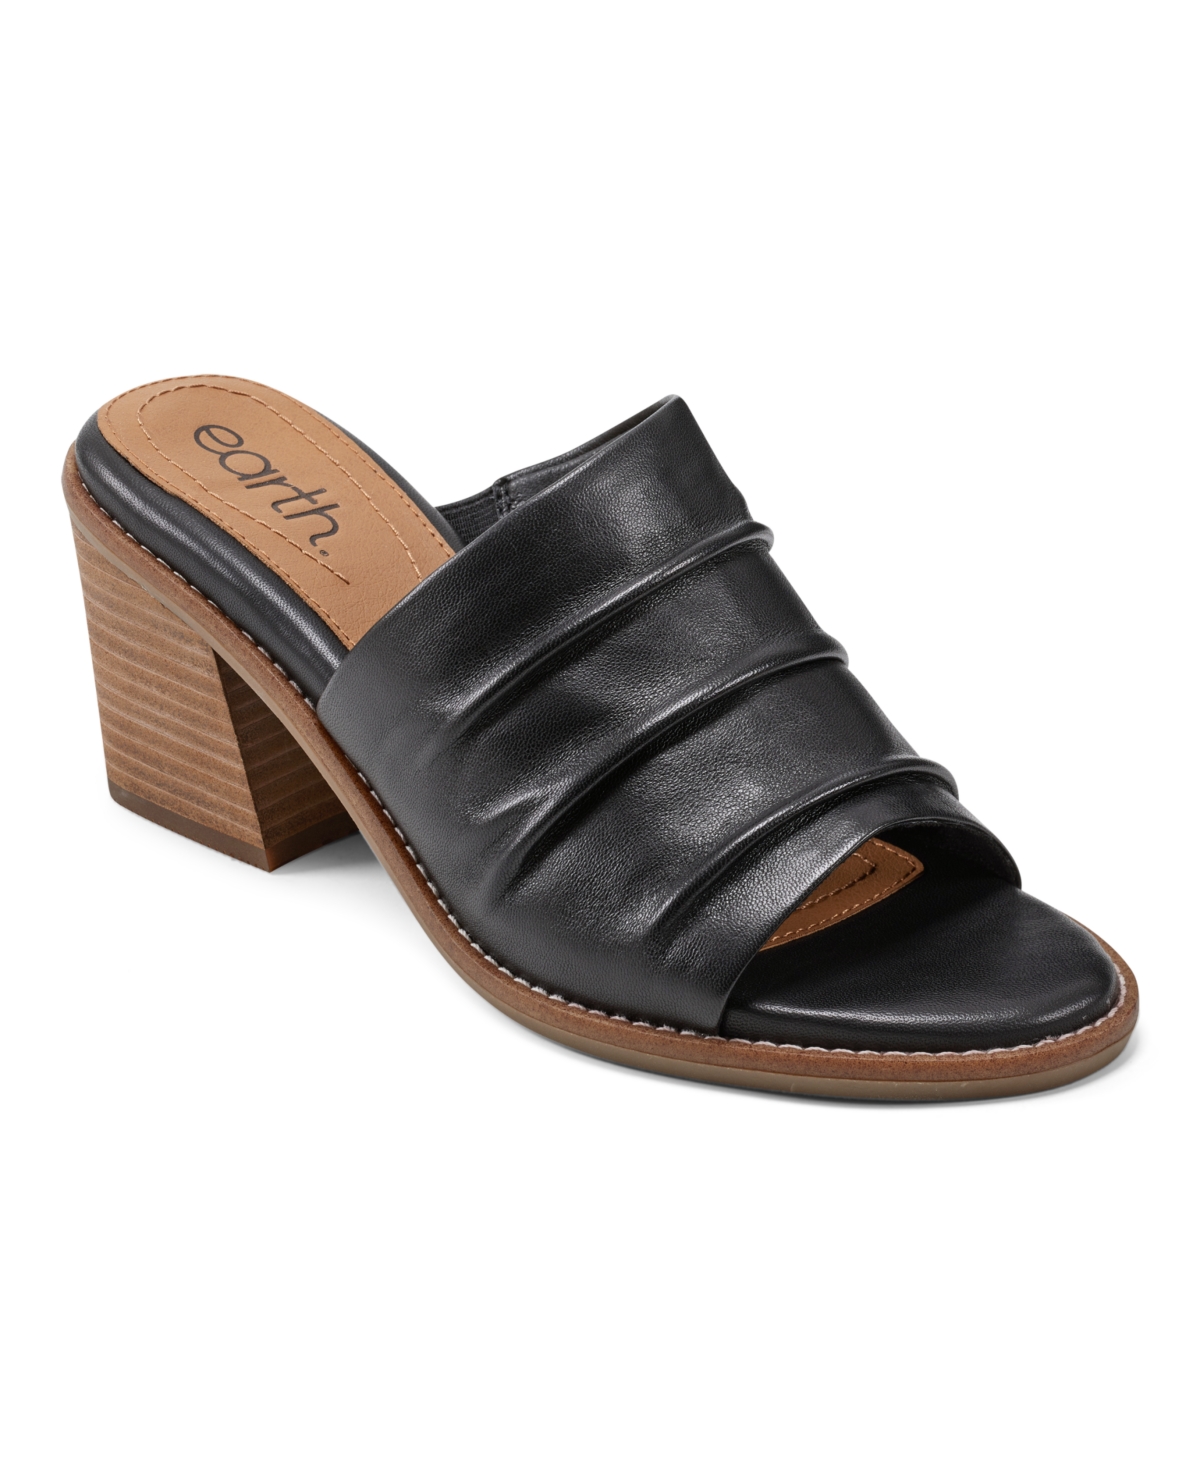 Earth Women's Adara Open Toe Block Heel Dress Sandals In Black Leather